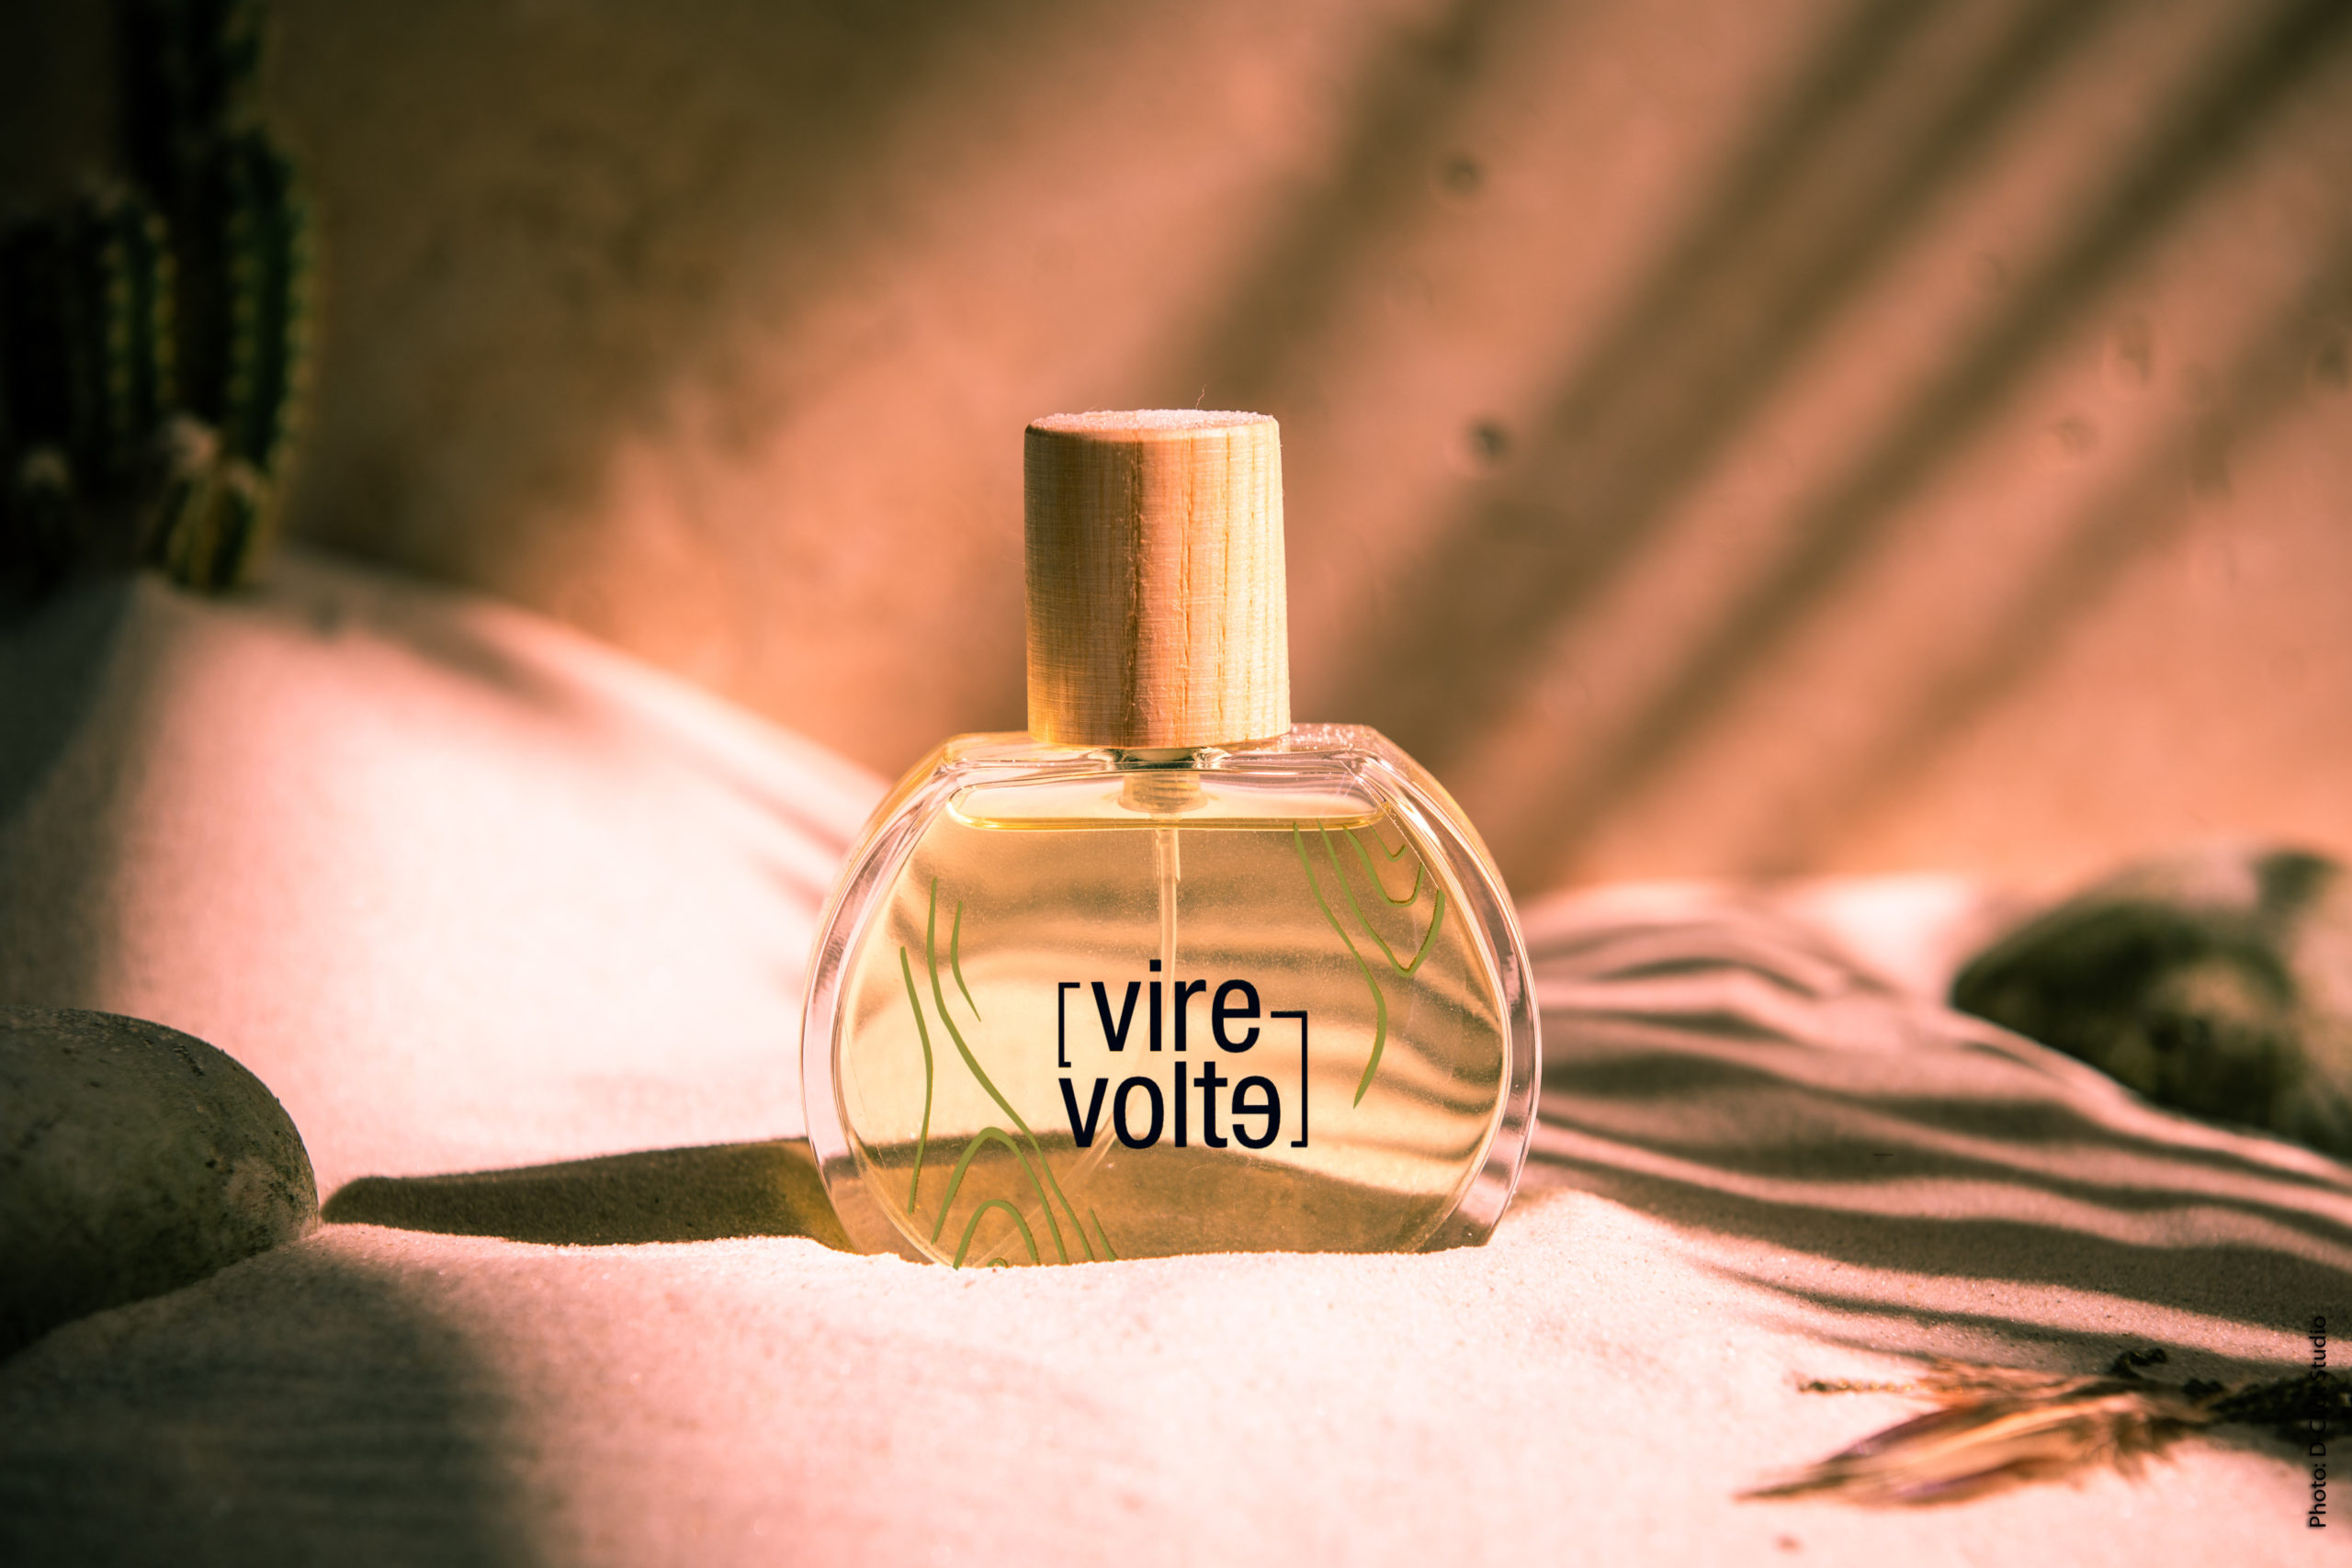 Vert Désert, ein holziger und würziger Duft - Parfums Virevolte